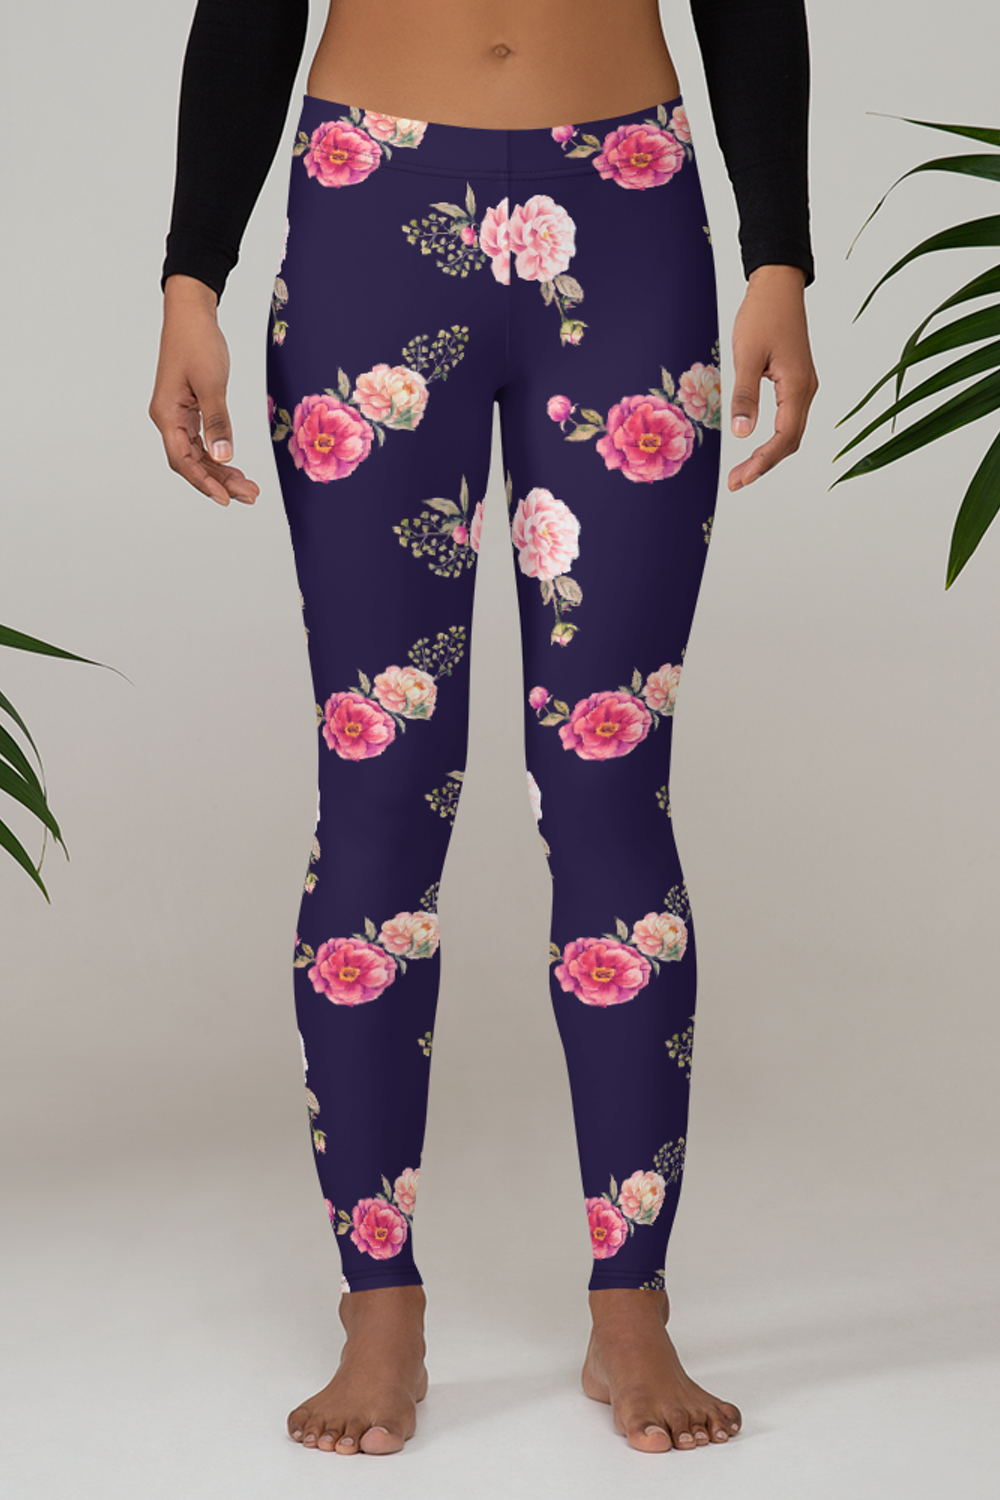 Rosy Plum Floral Watercolor Graphic Print Women's Standard Yoga Leggings